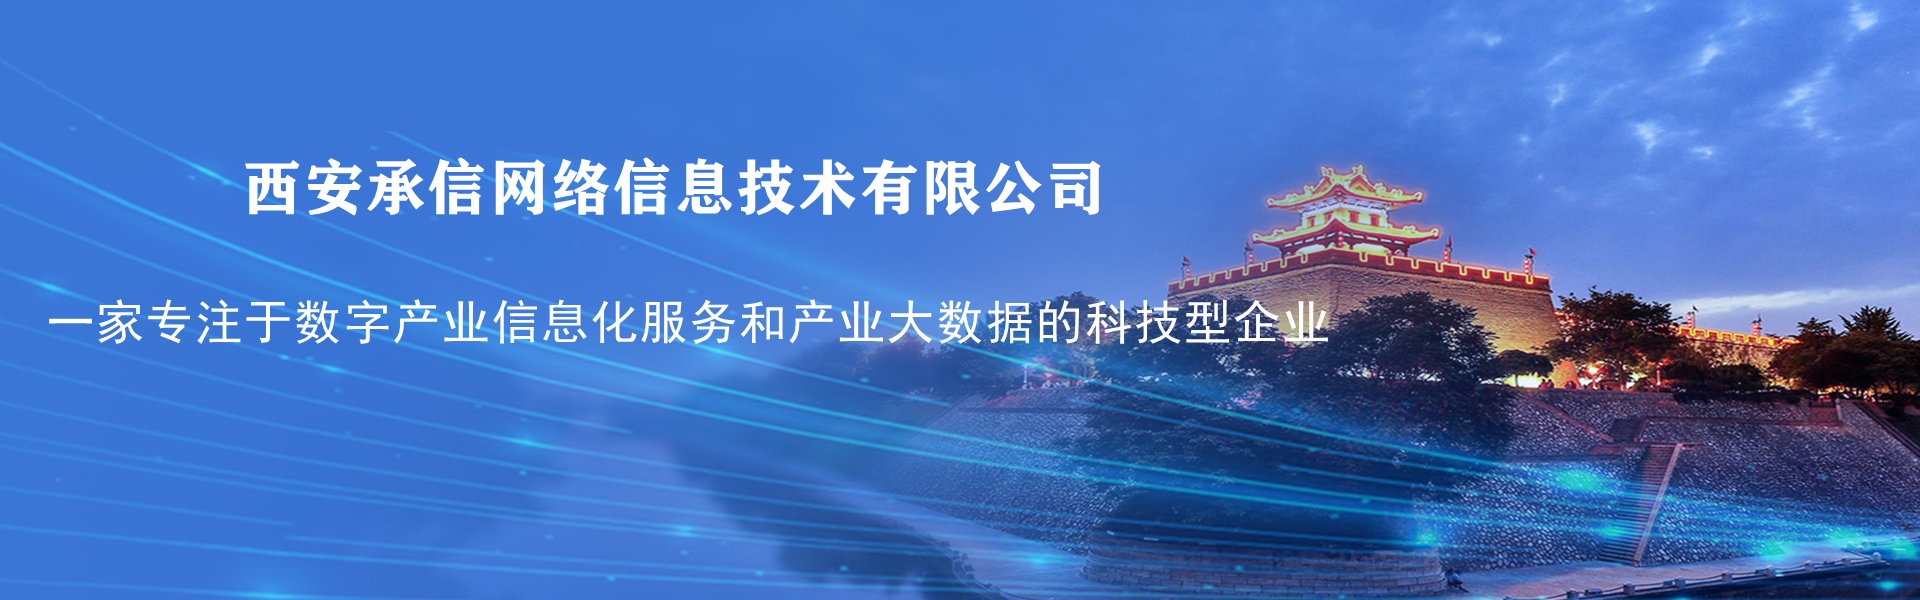 西安承信网络信息技术有限公司